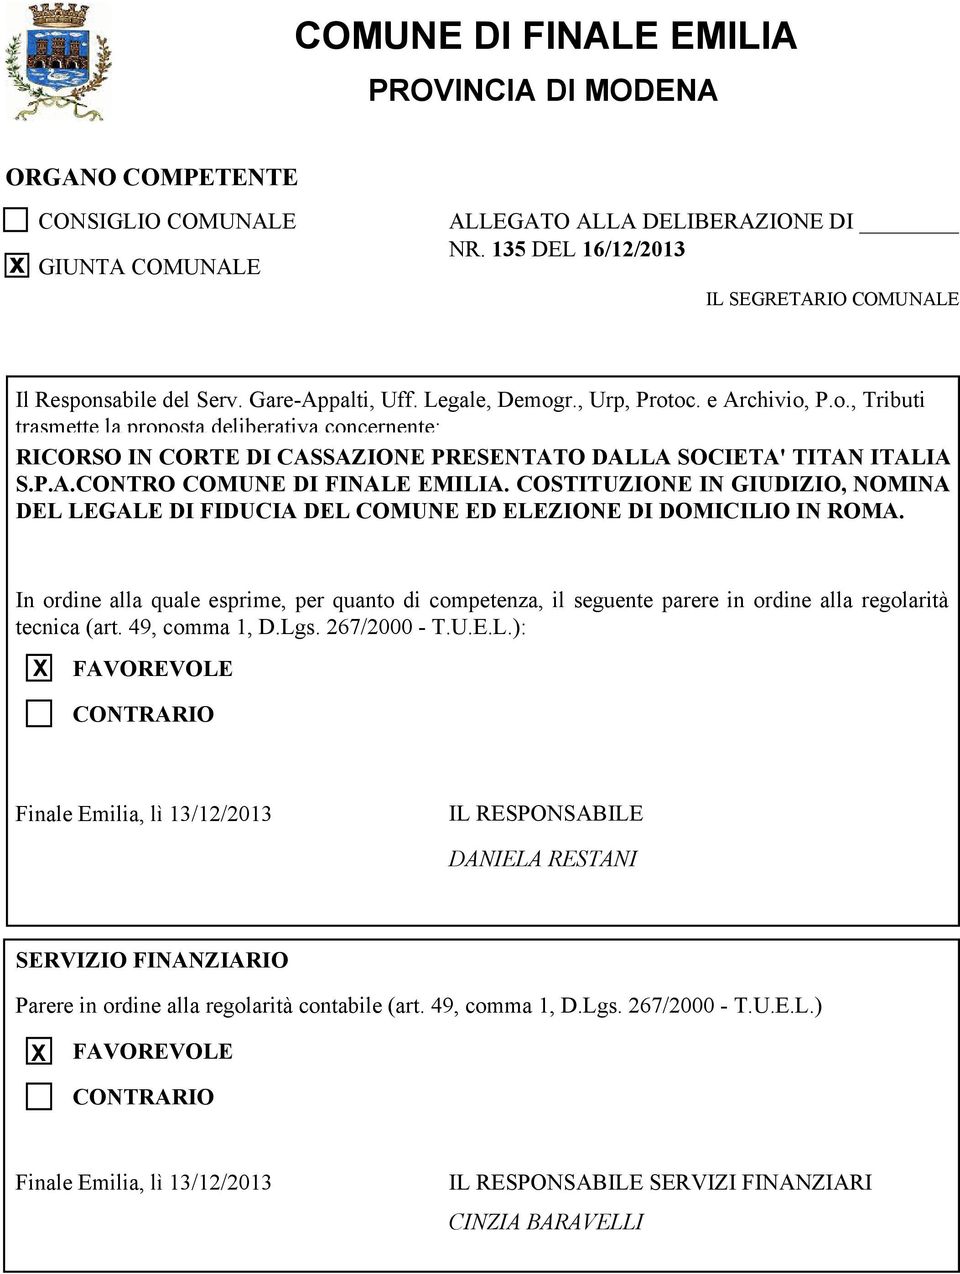 COTITUZIONE IN GIUDIZIO, NOMINA DEL LEGALE DI FIDUCIA DEL COMUNE ED ELEZIONE DI DOMICILIO IN ROMA.